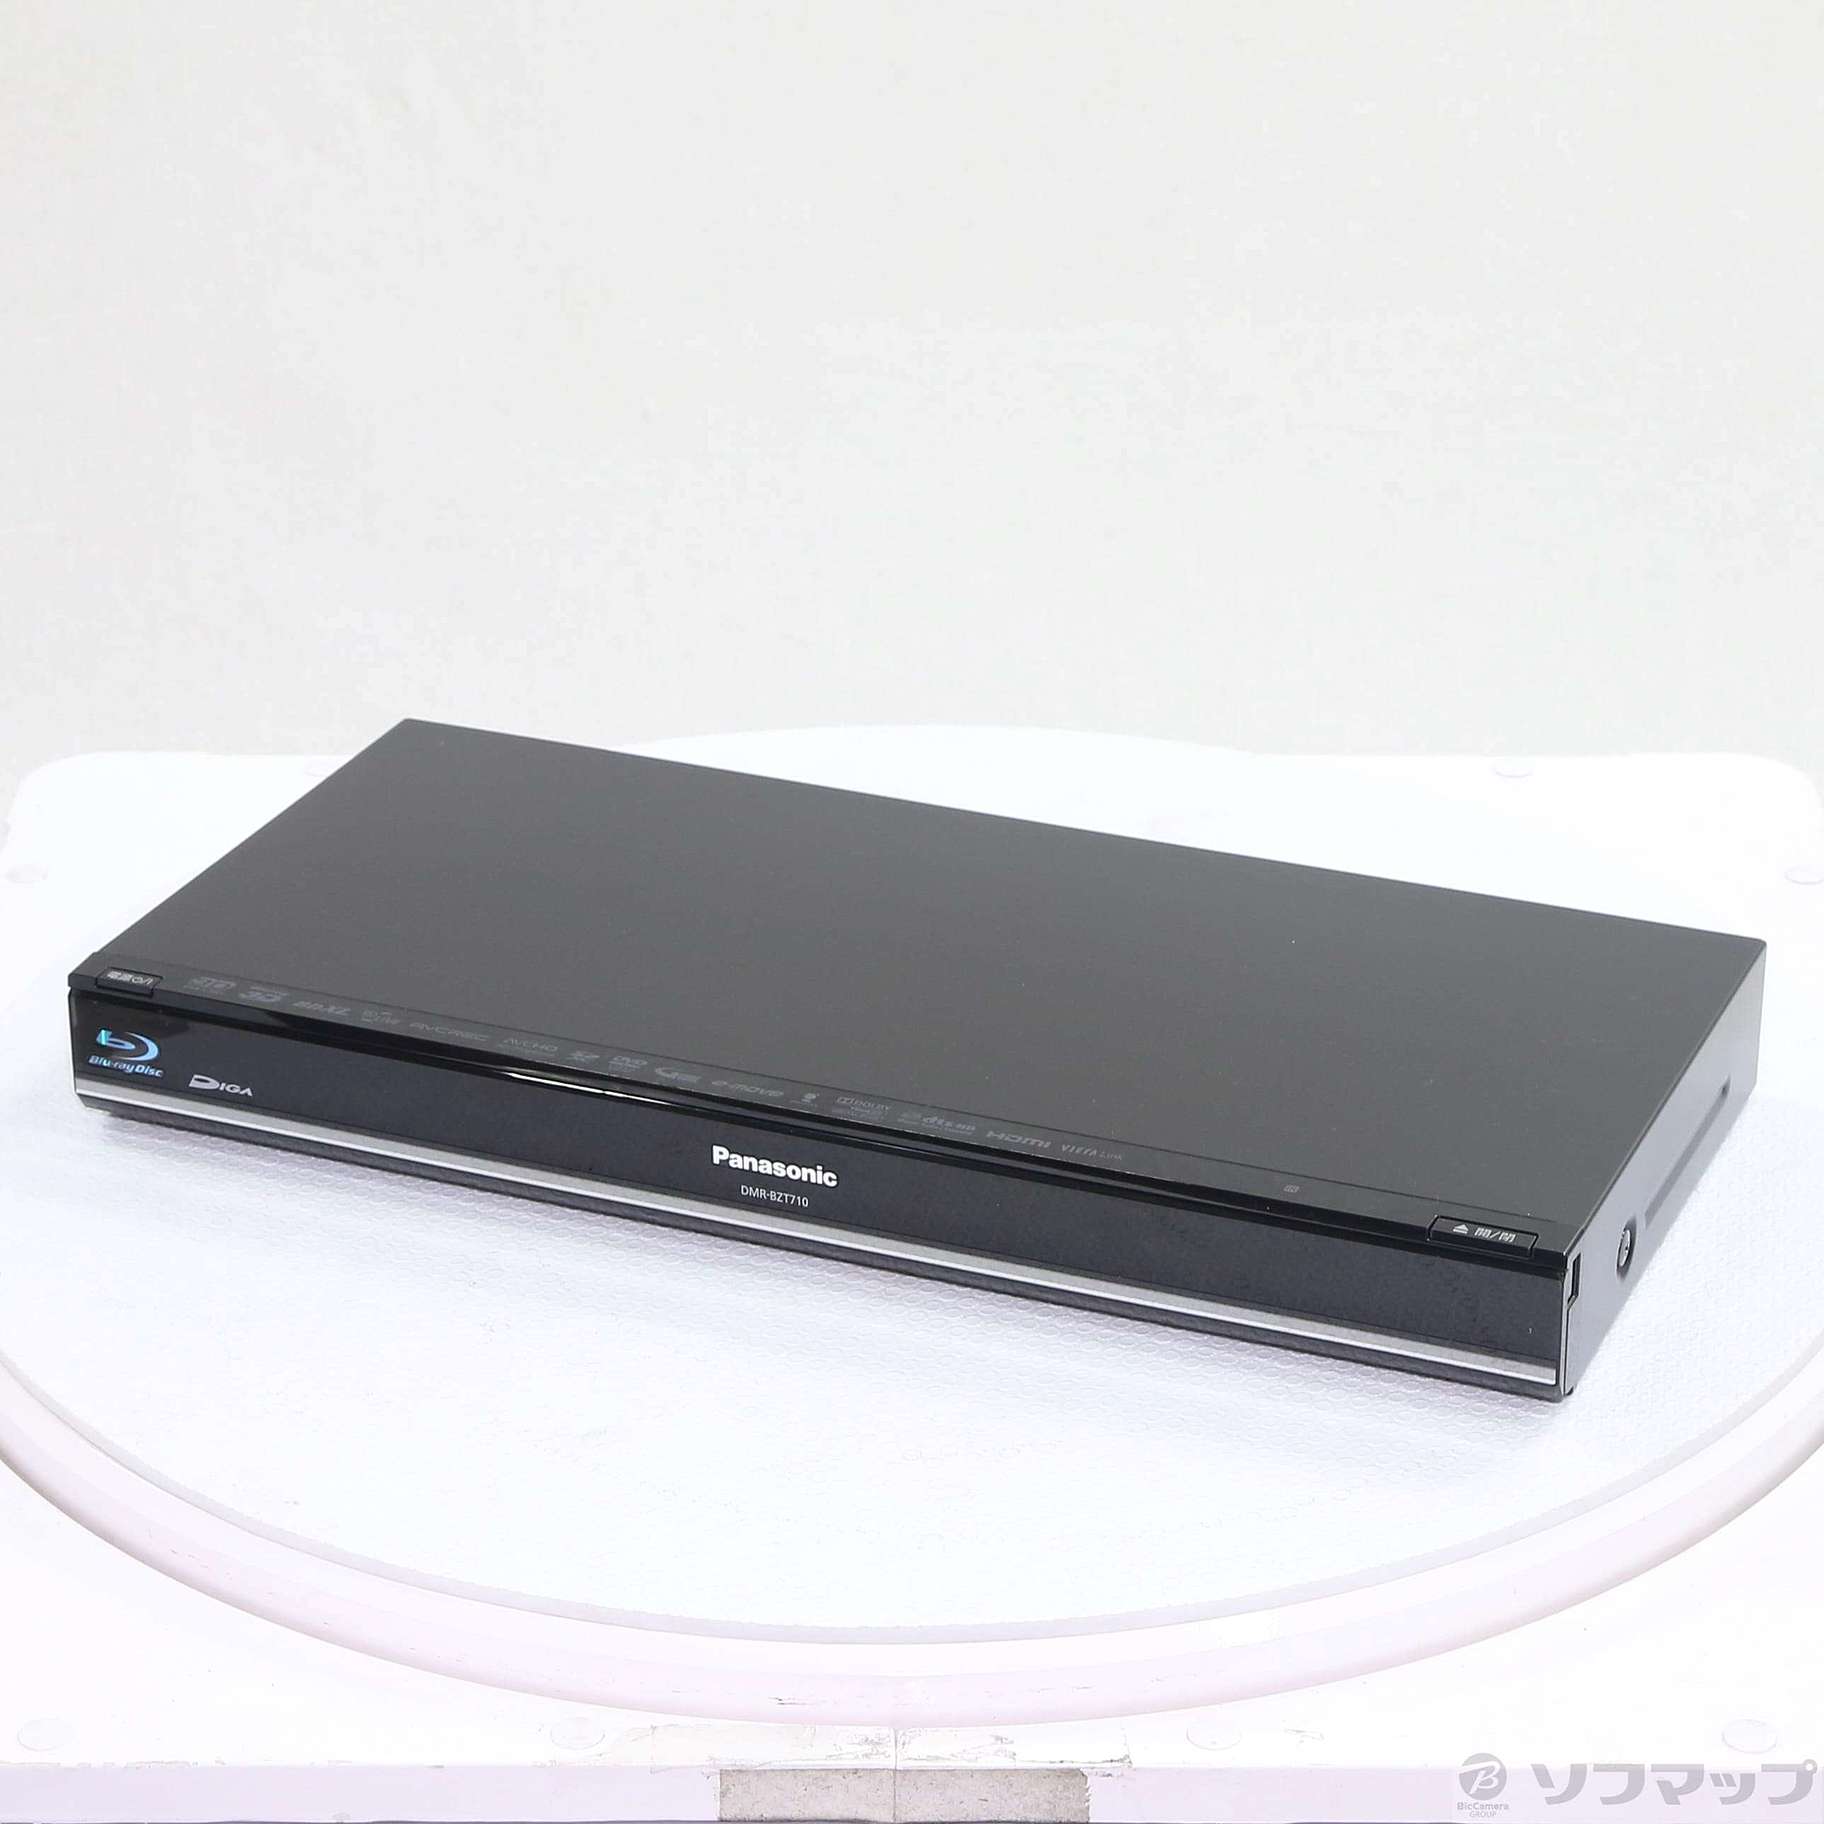 パナソニック DMR-BZT710 ブルーレイレコーダー HDD 500GB - テレビ/映像機器